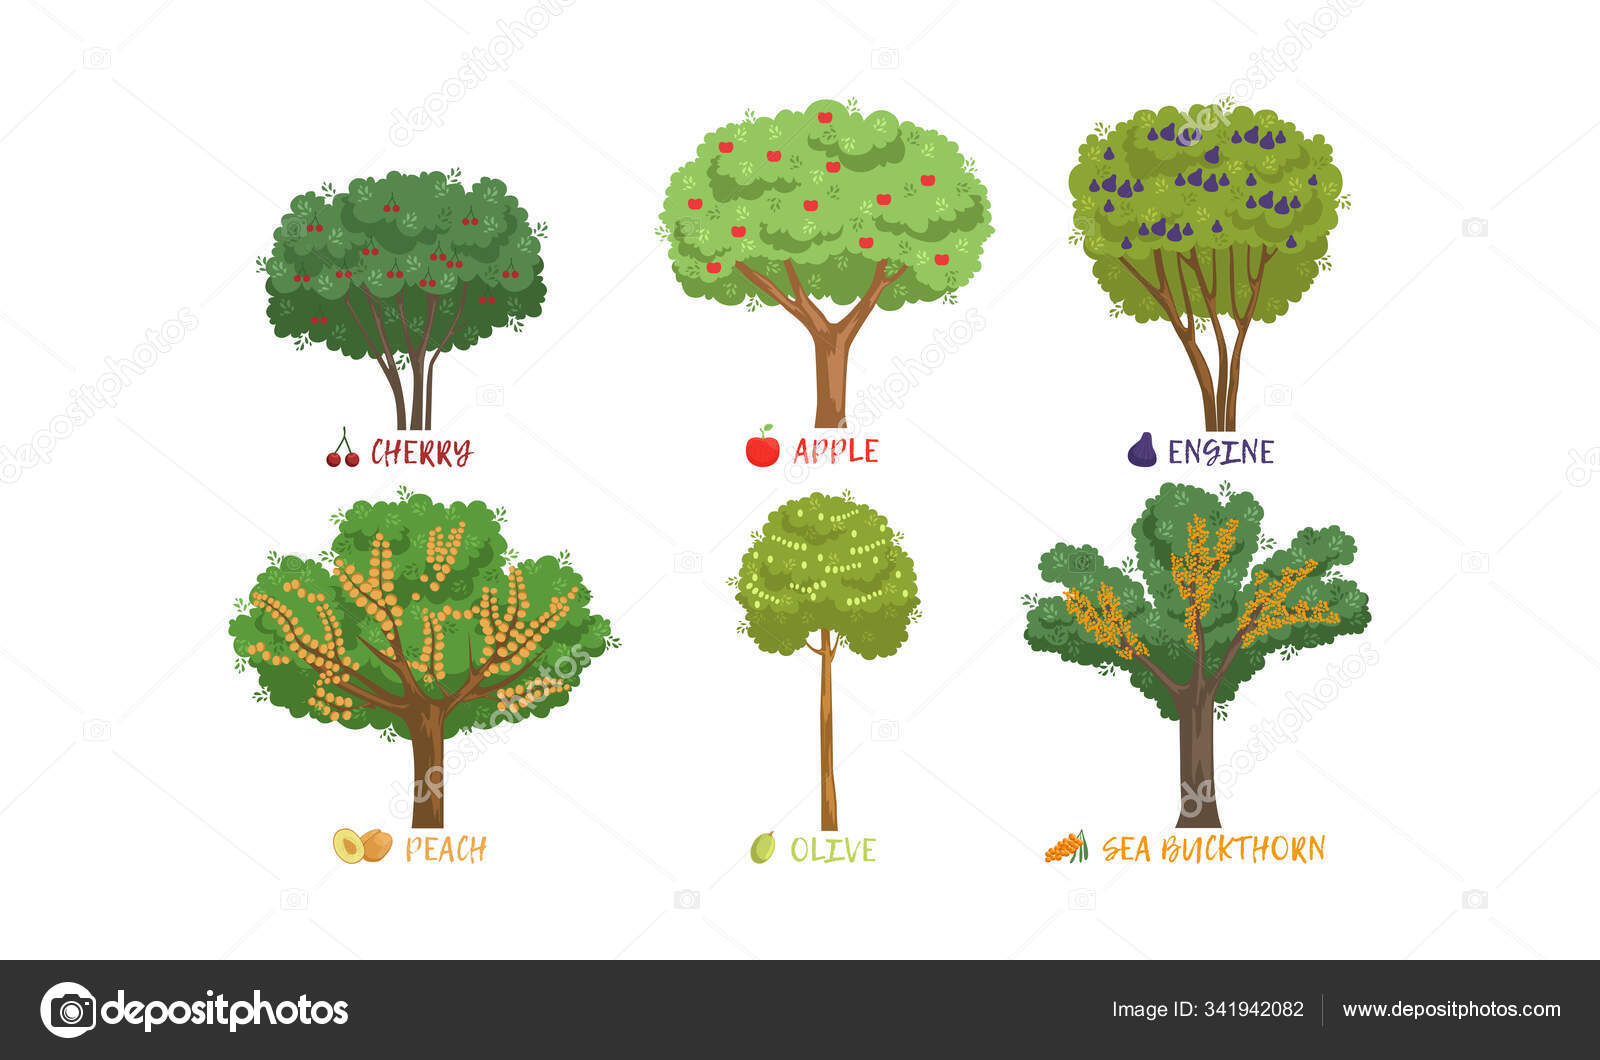 деревья названия и картинки каждое дерево